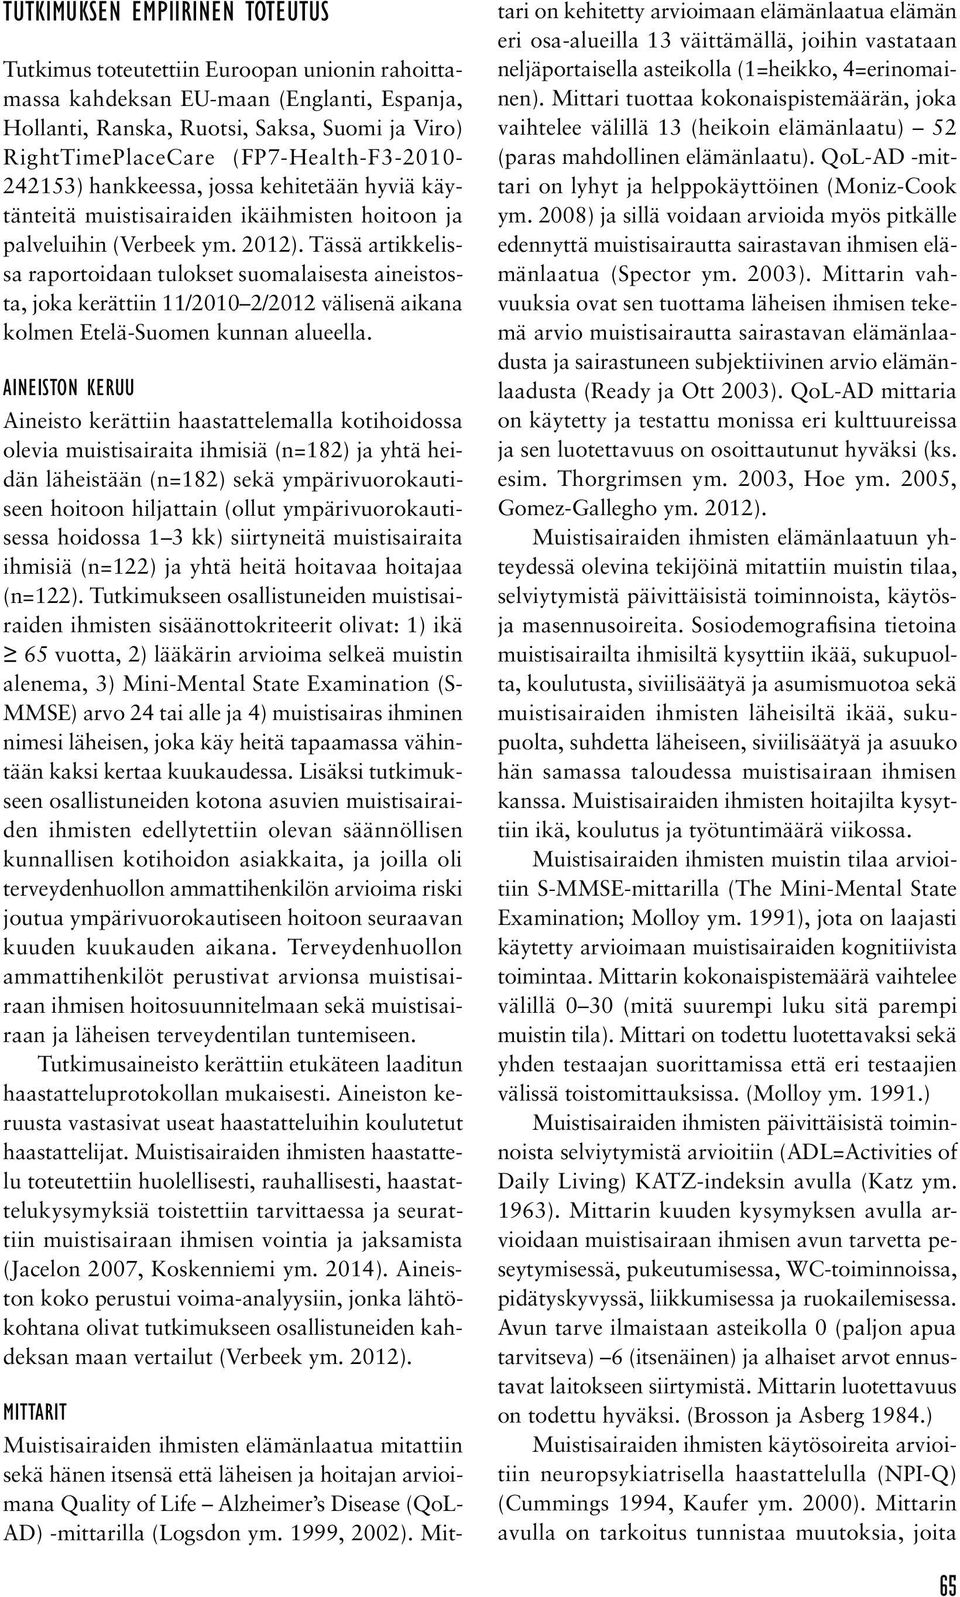 Tässä artikkelissa raportoidaan tulokset suomalaisesta aineistosta, joka kerättiin 11/2010 2/2012 välisenä aikana kolmen Etelä-Suomen kunnan alueella.